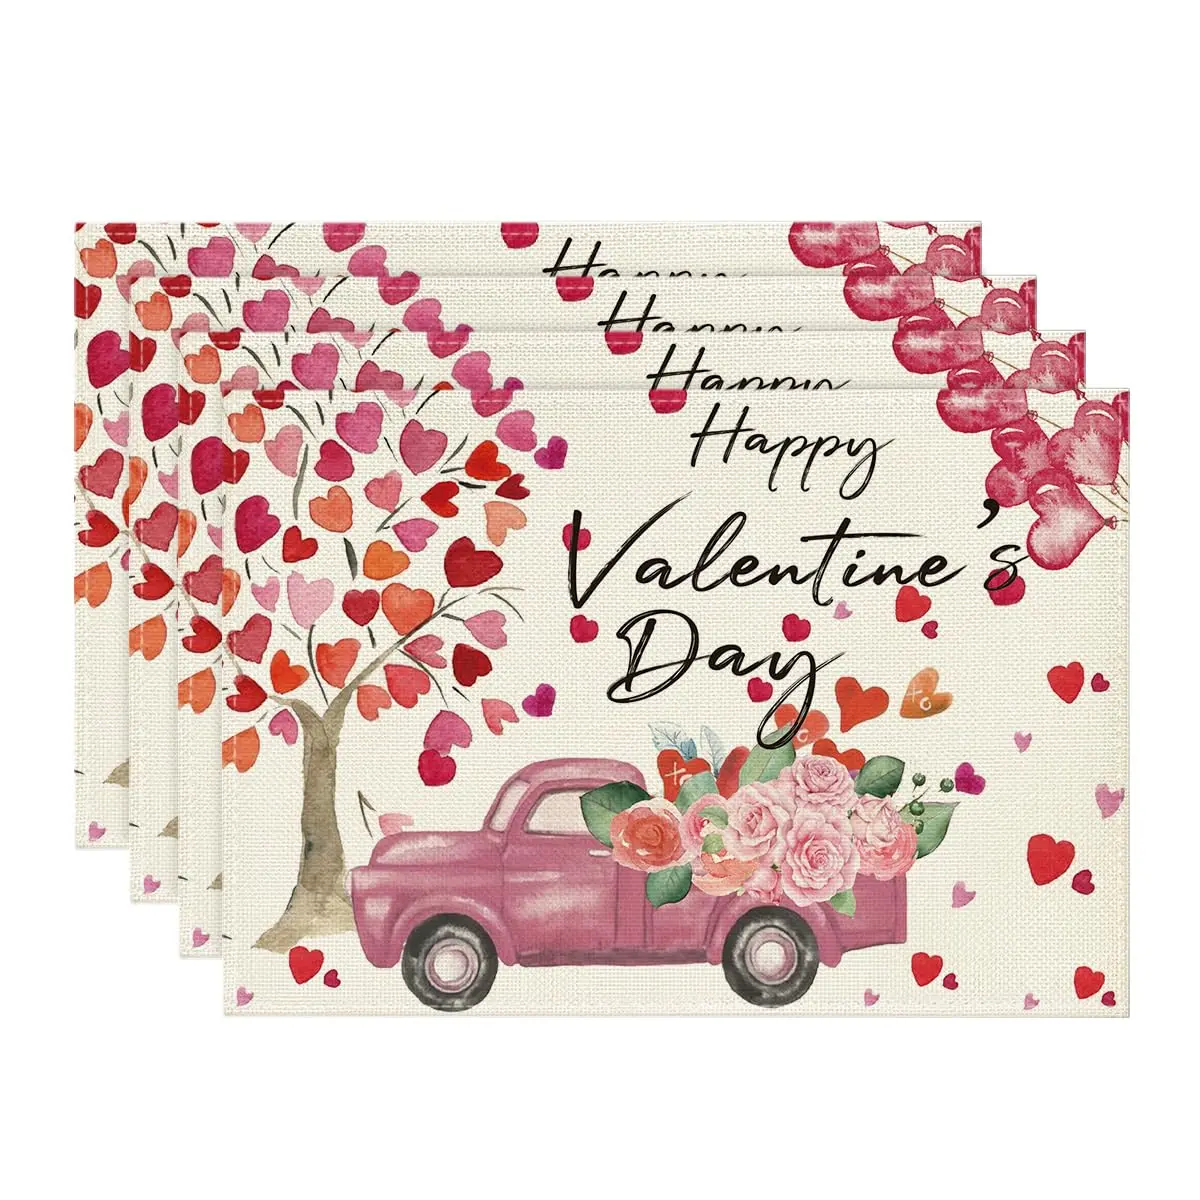 

Салфетки с Днем Святого Валентина, дерево-сердце, грузовик, роза, воздушный шар, 12x18 дюймов, сезонные, весенние настольные коврики для декора столовой